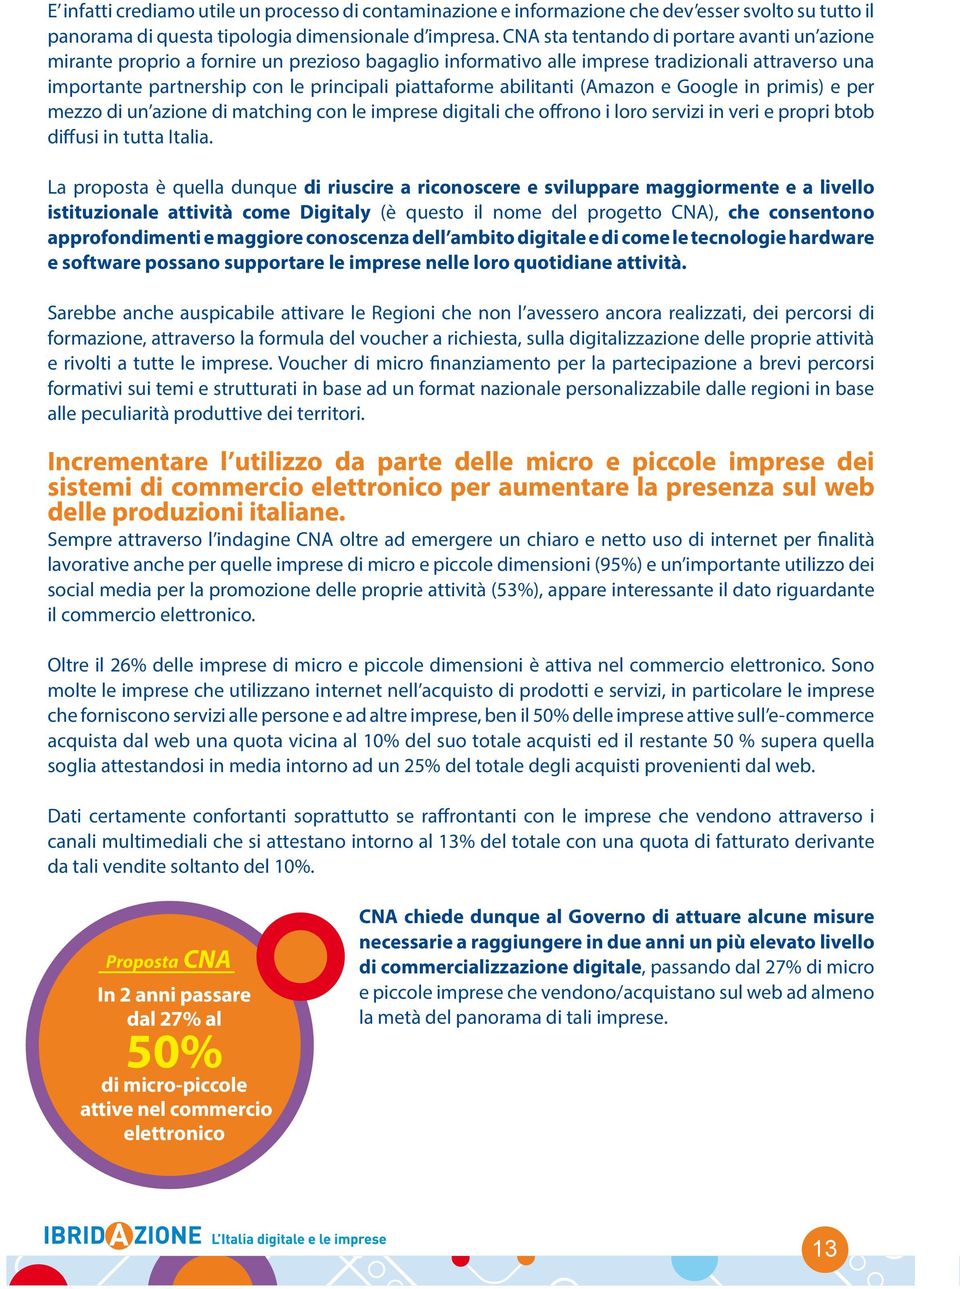 abilitanti (Amazon e Google in primis) e per mezzo di un azione di matching con le imprese digitali che offrono i loro servizi in veri e propri btob diffusi in tutta Italia.